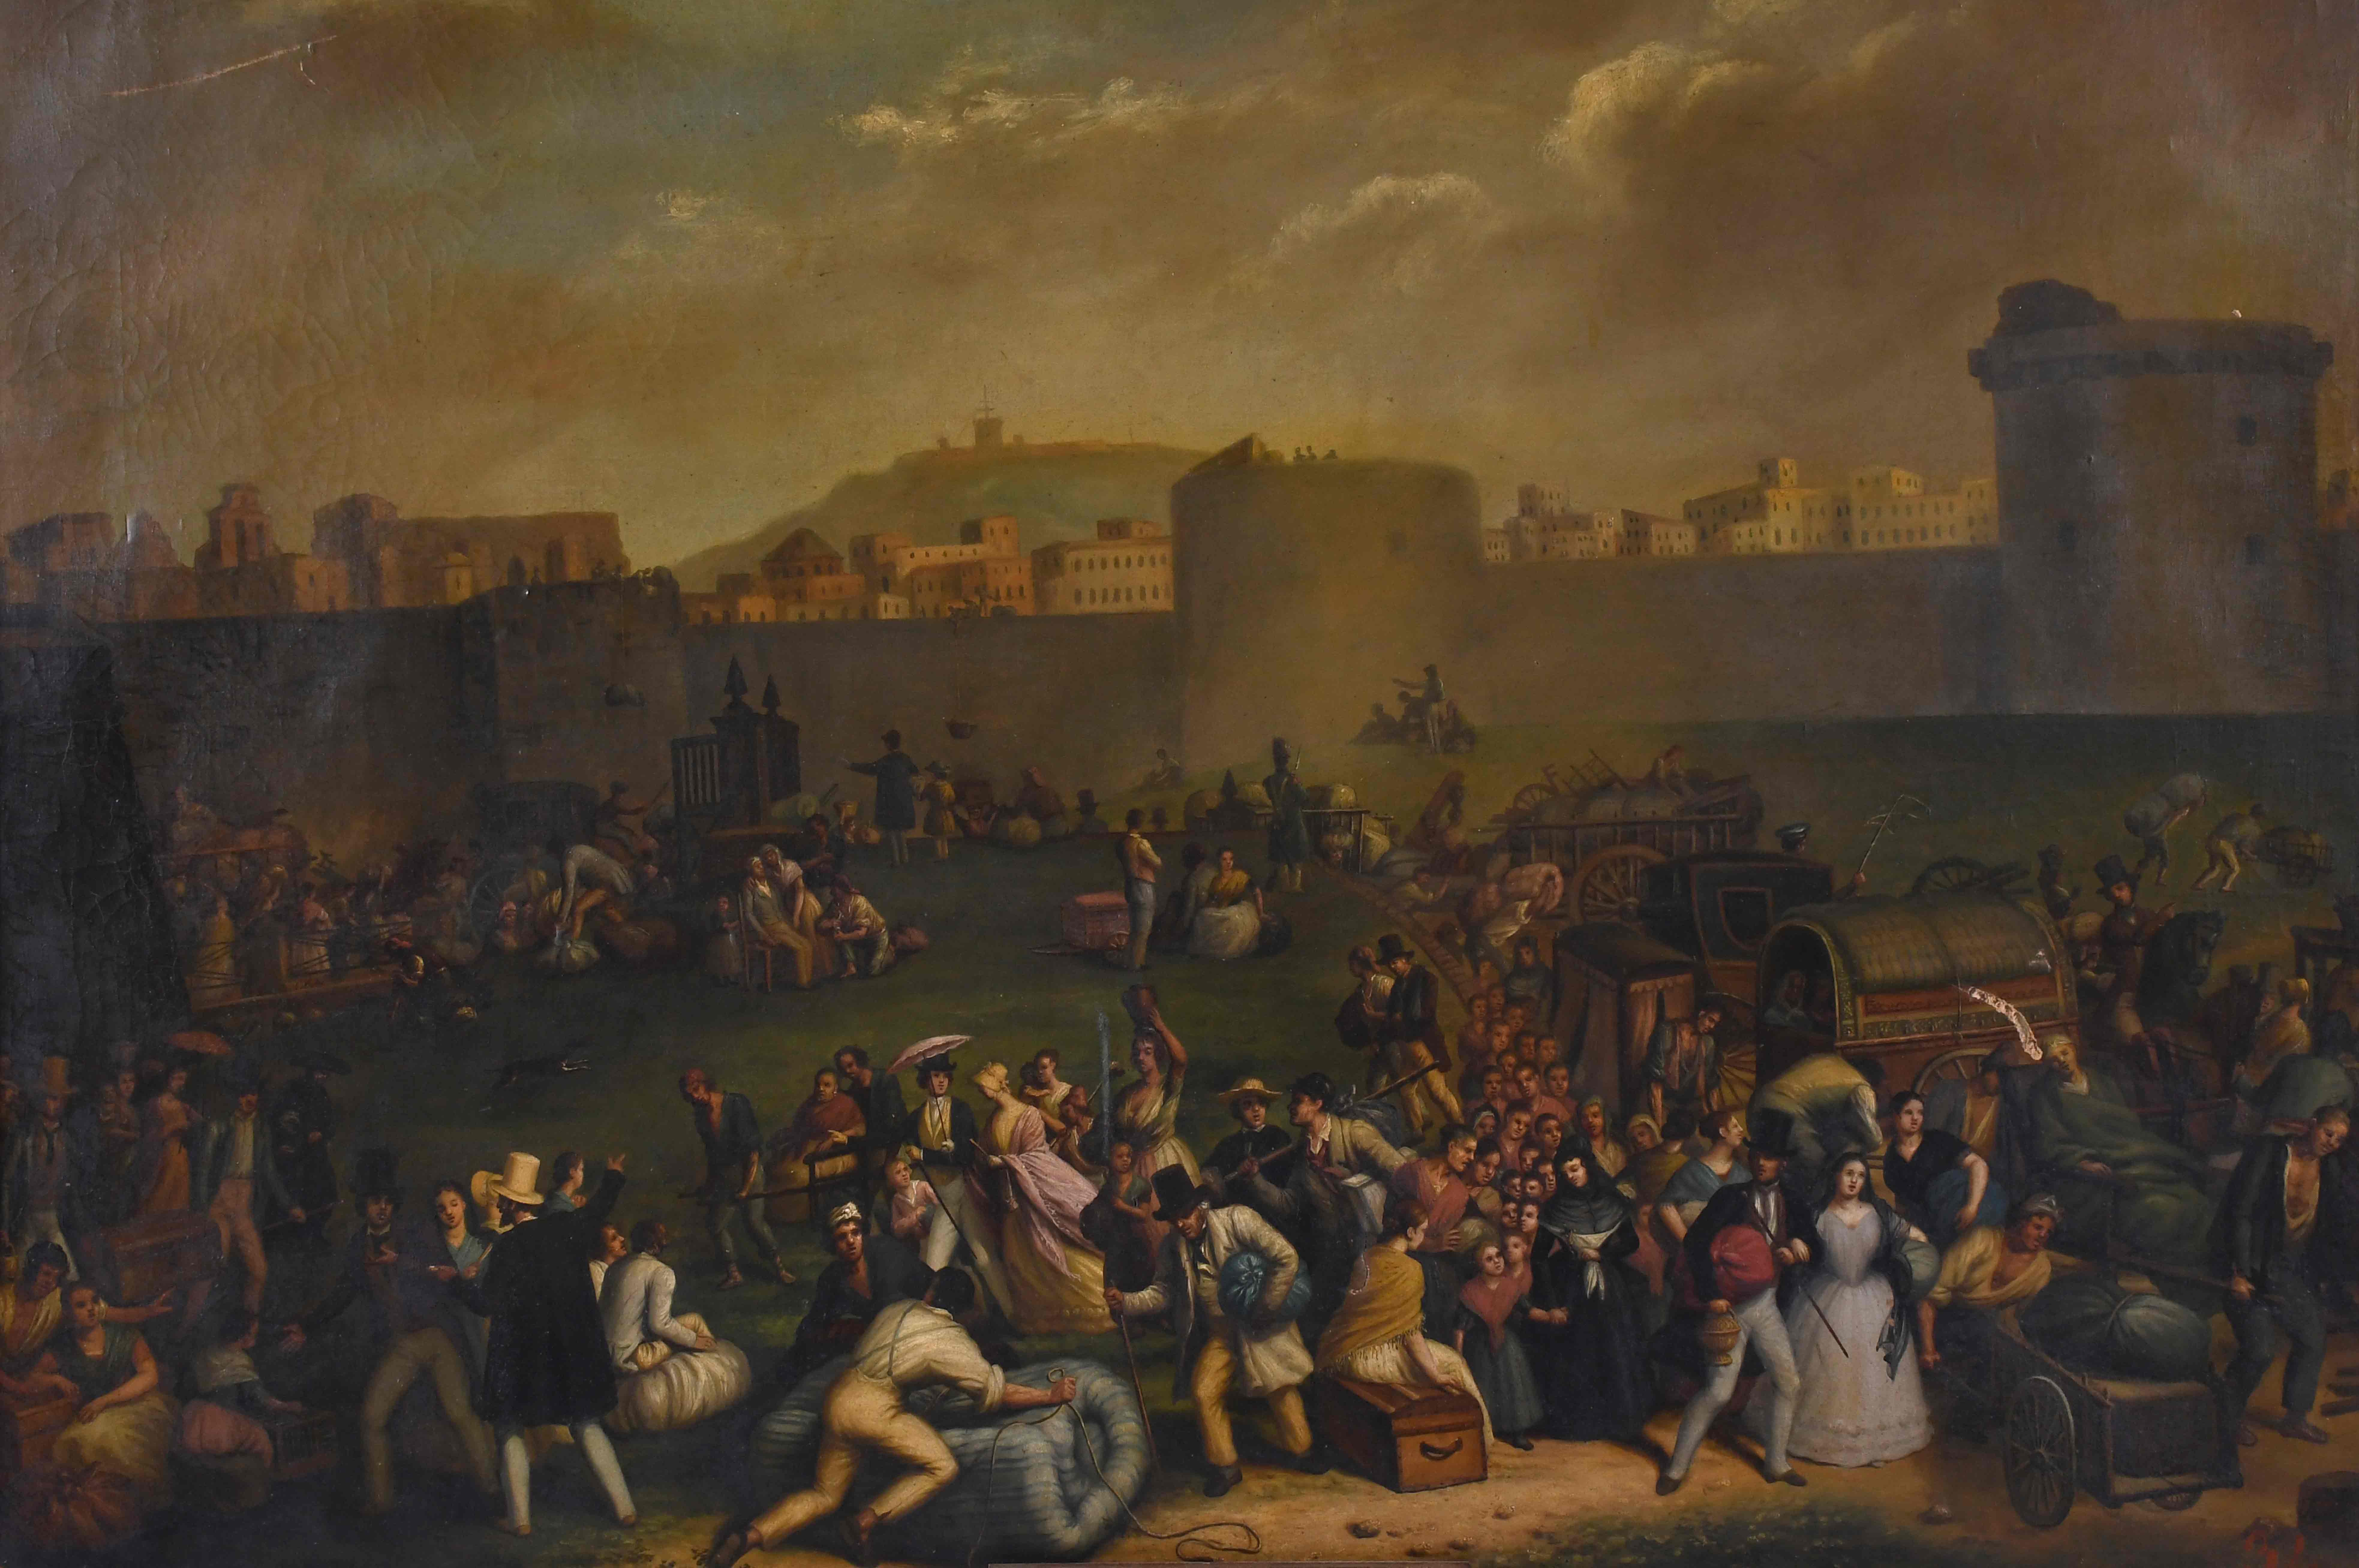 Una óleo de Barcelona pintado por Antoni Ferran y Satayol comprado por la Generalitat de Catalunya: la huida de la ciudad condal en 1843